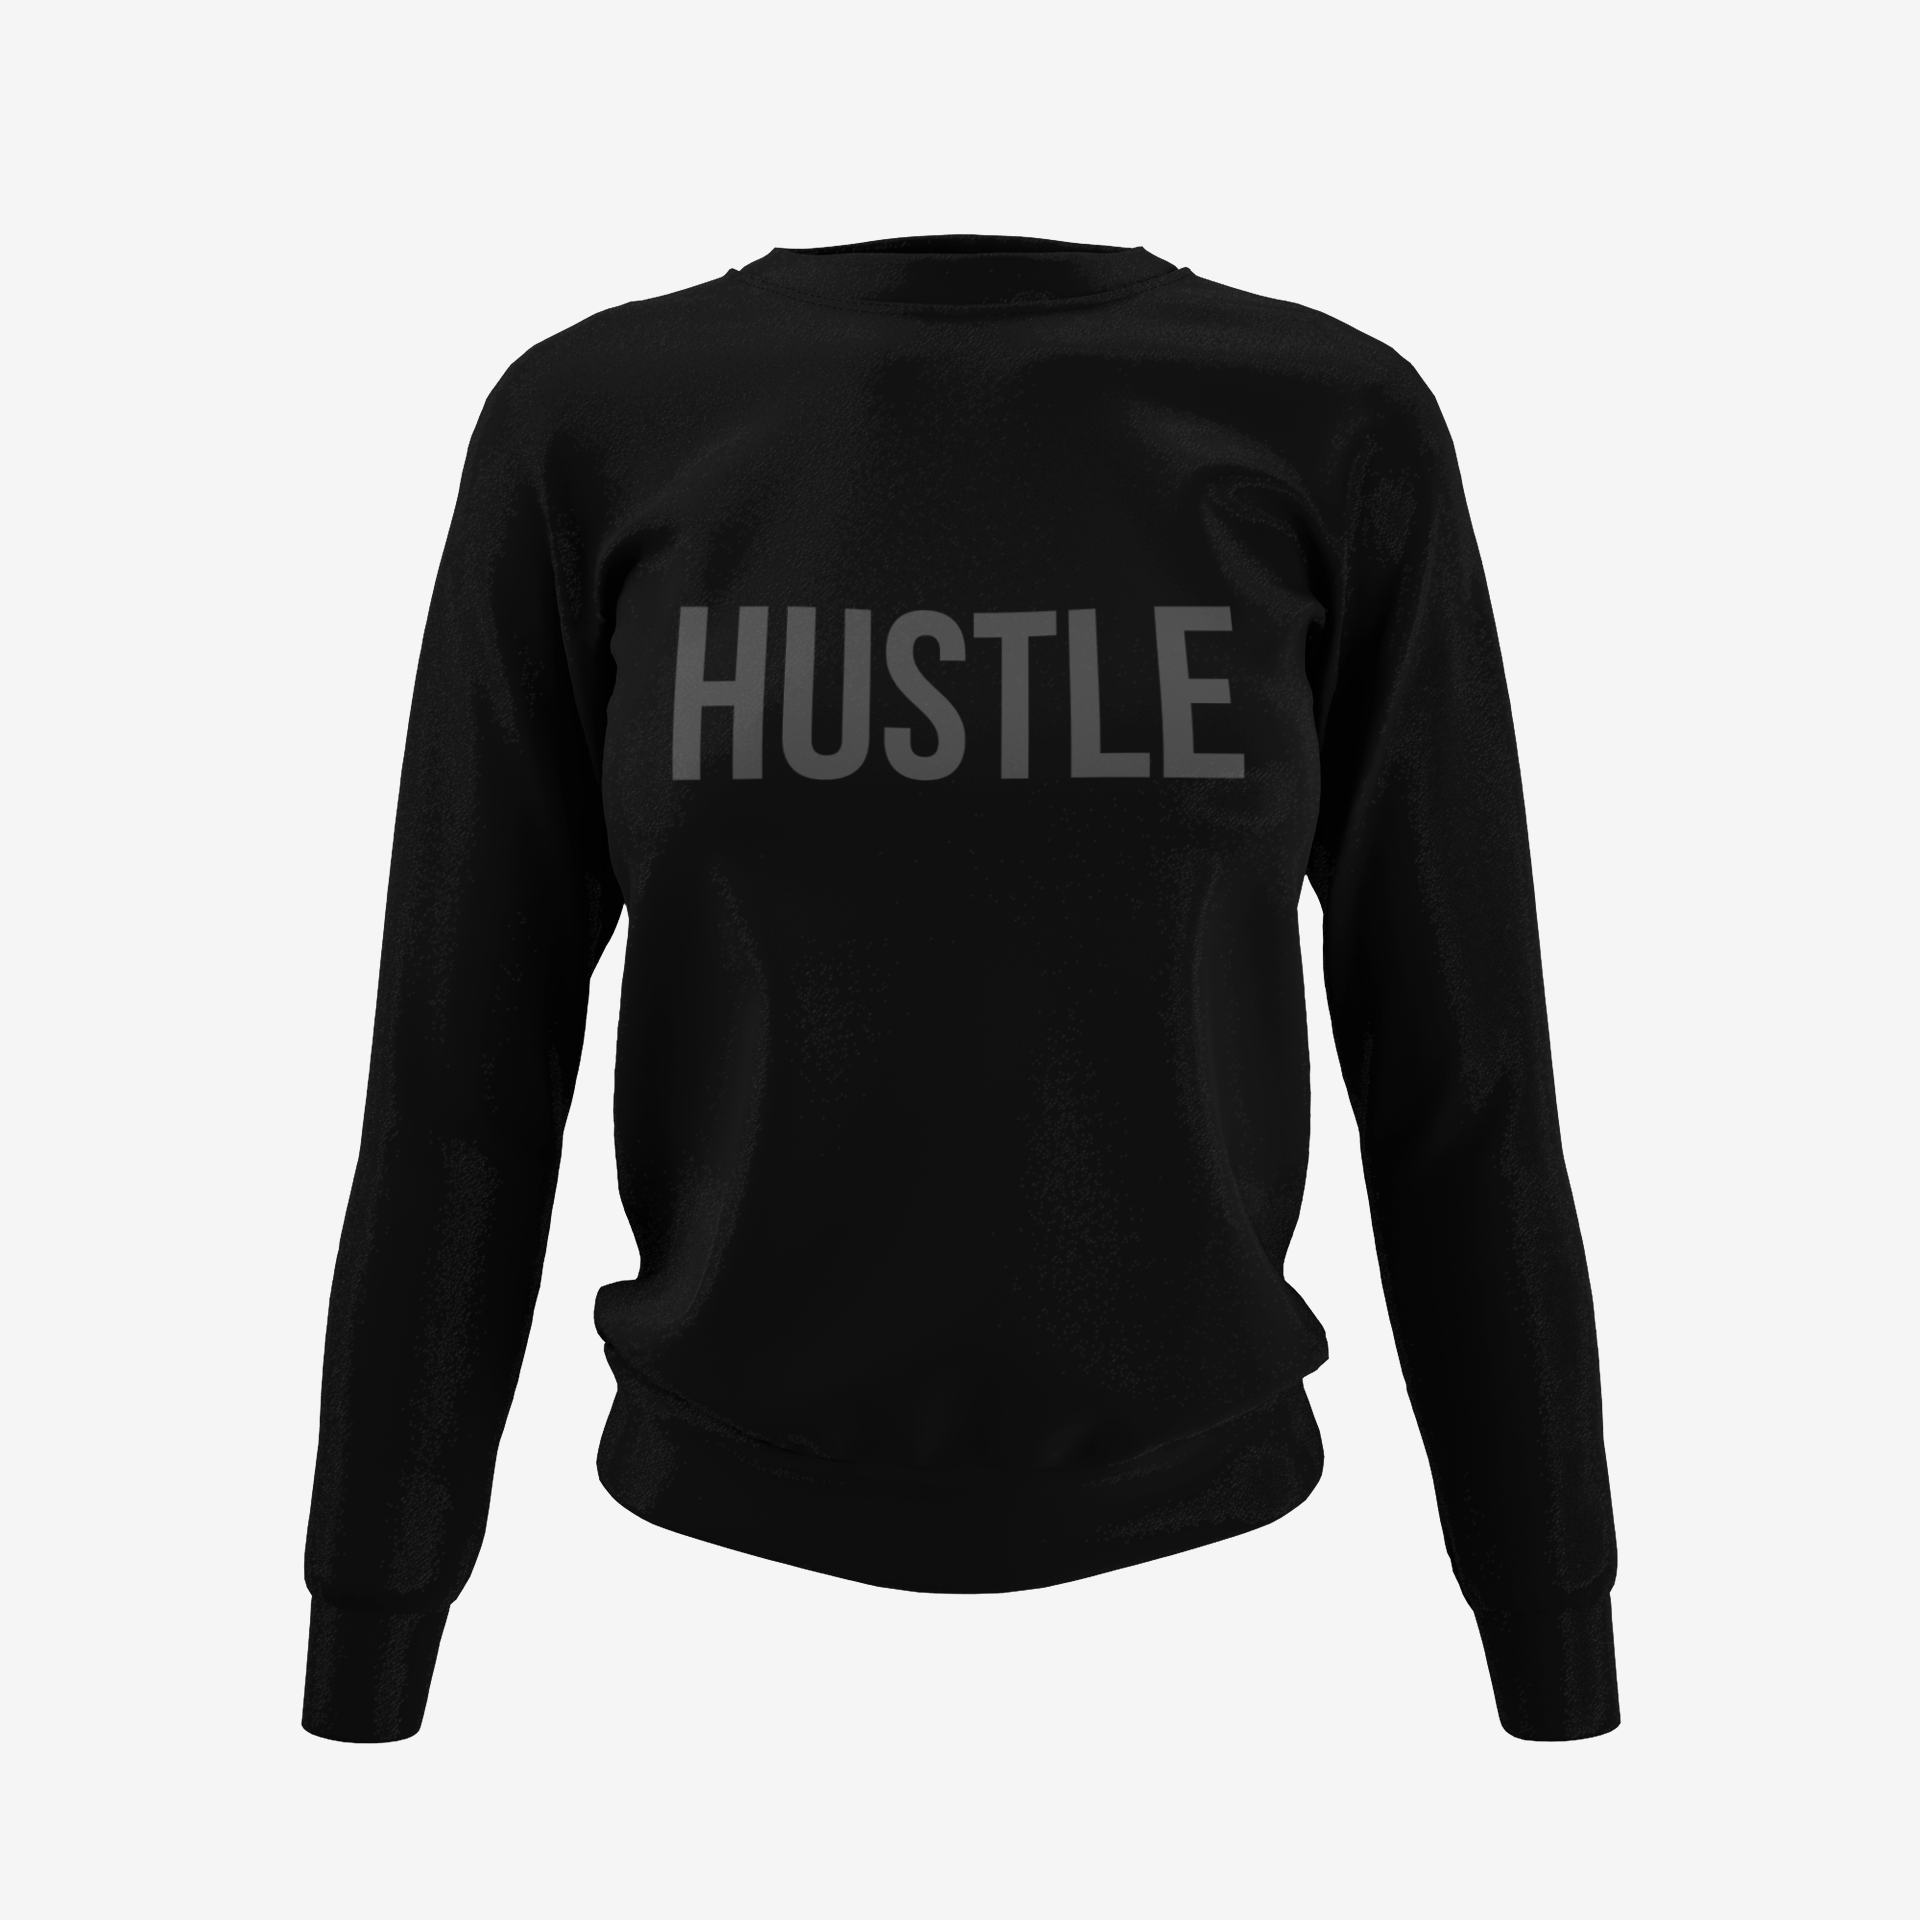 The Unisex Hustle Sweatshirt